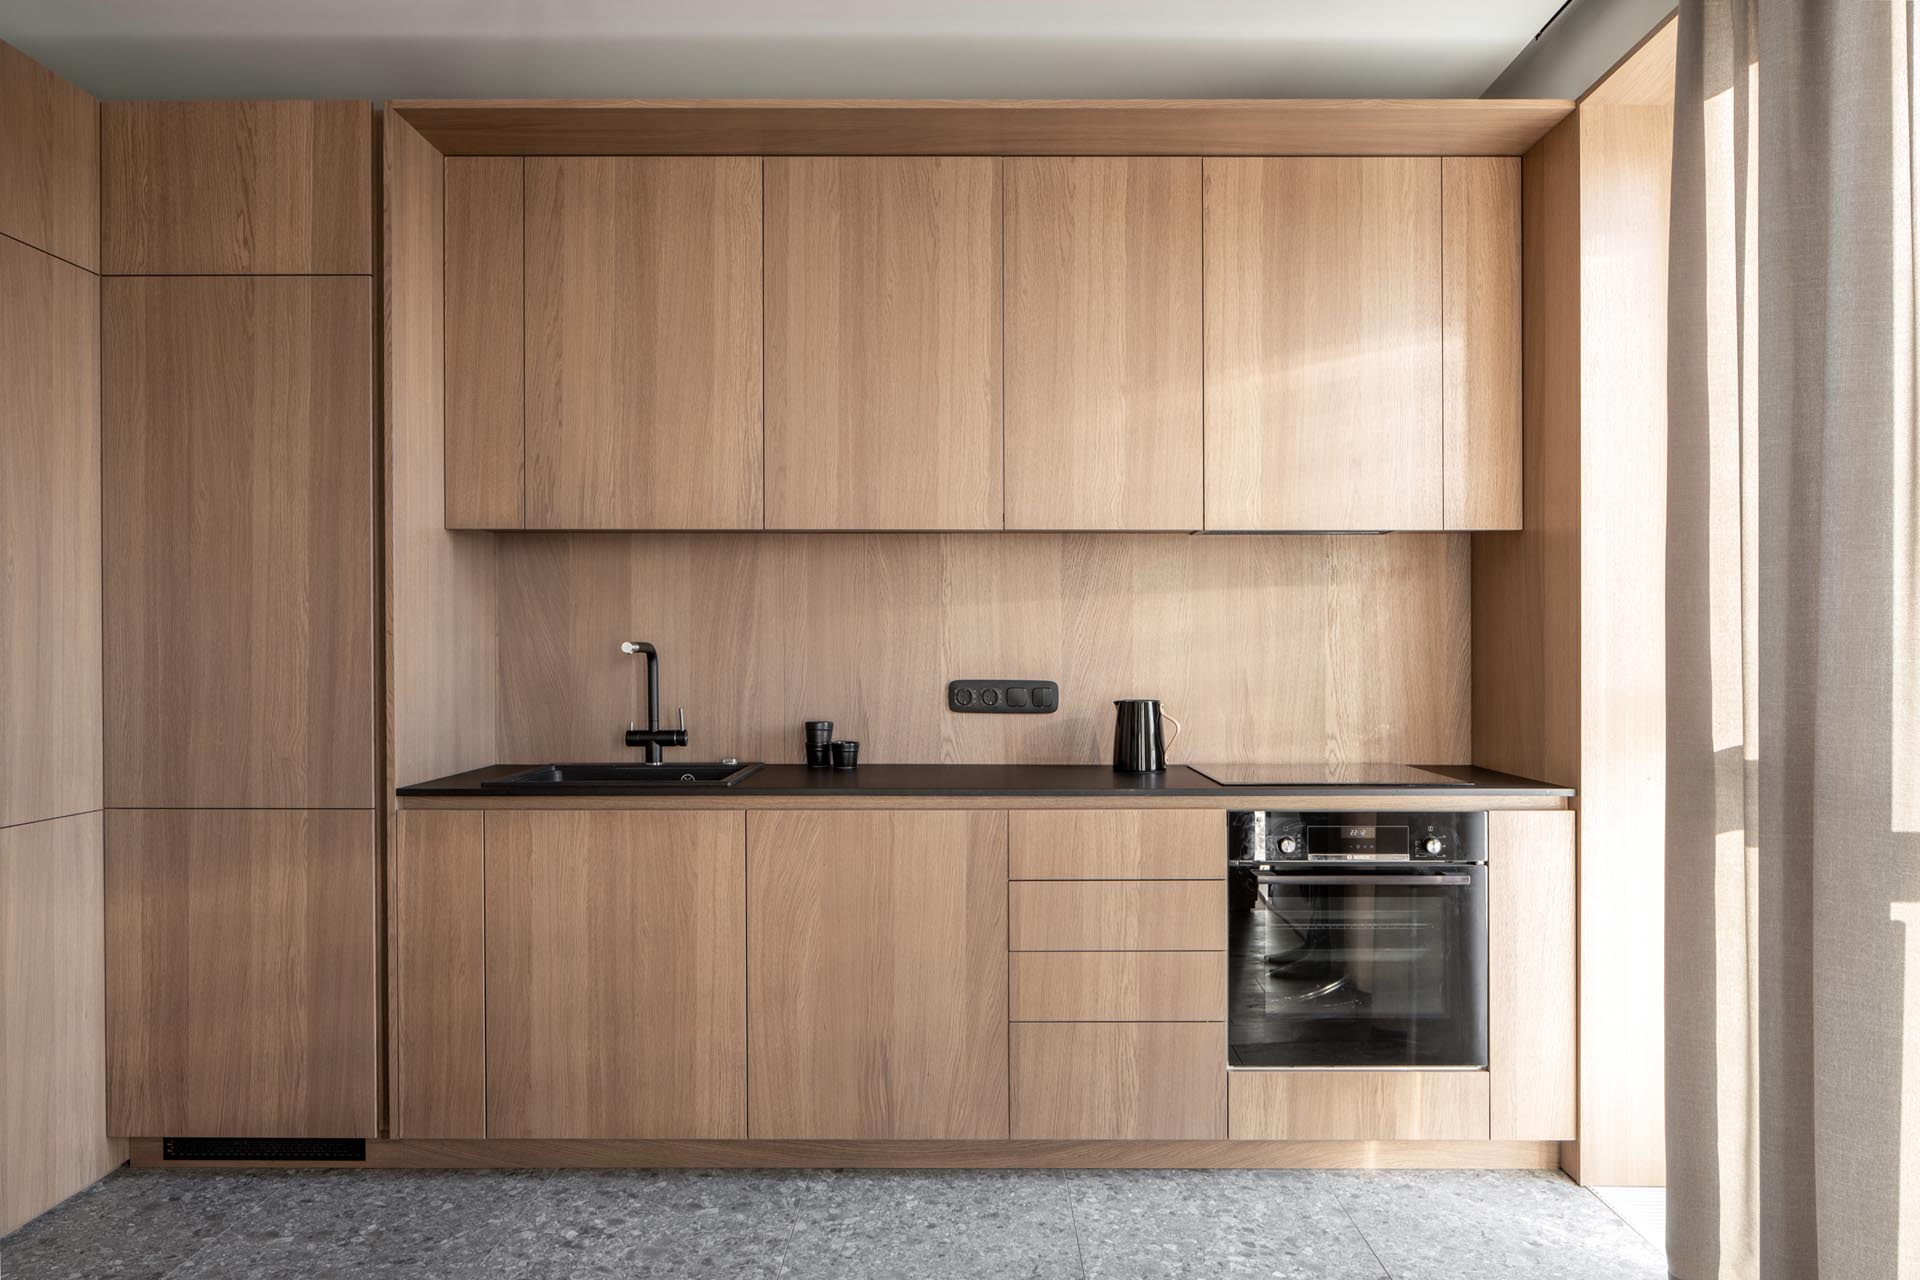 Современная деревянная кухня со шкафами без оборудования, а также встроенным холодильником и посудомоечной машиной.